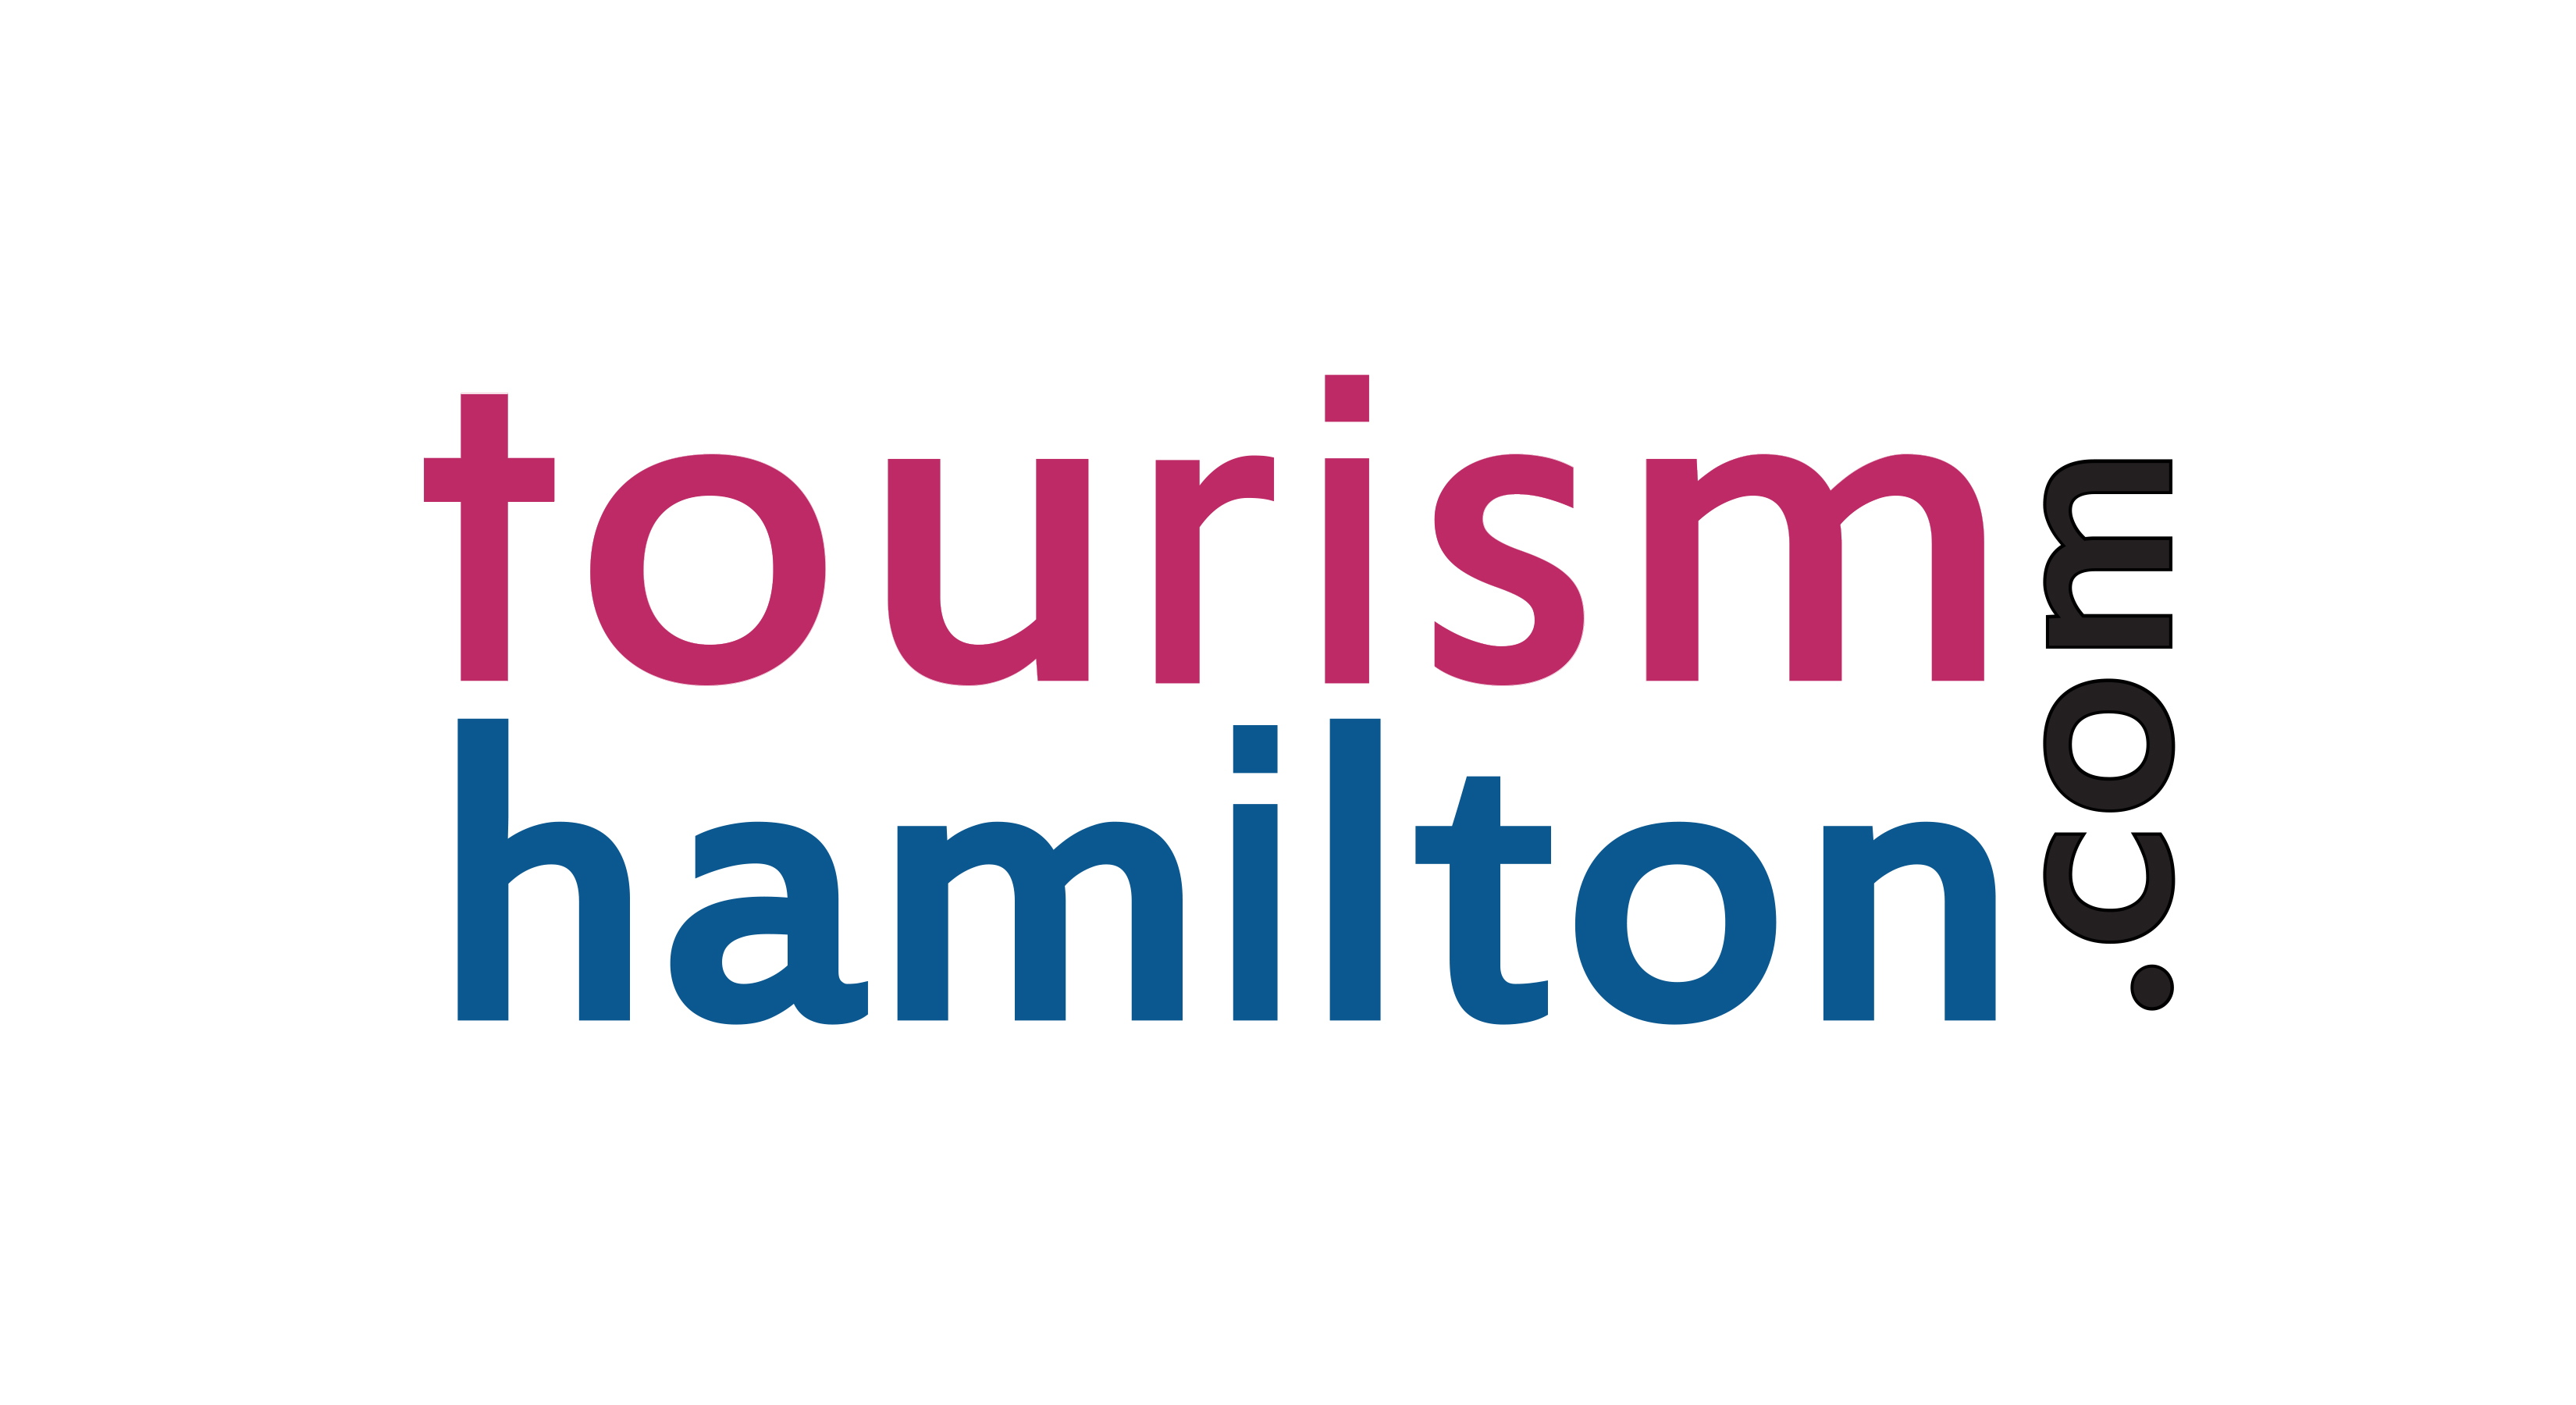 Tourism Hamilton